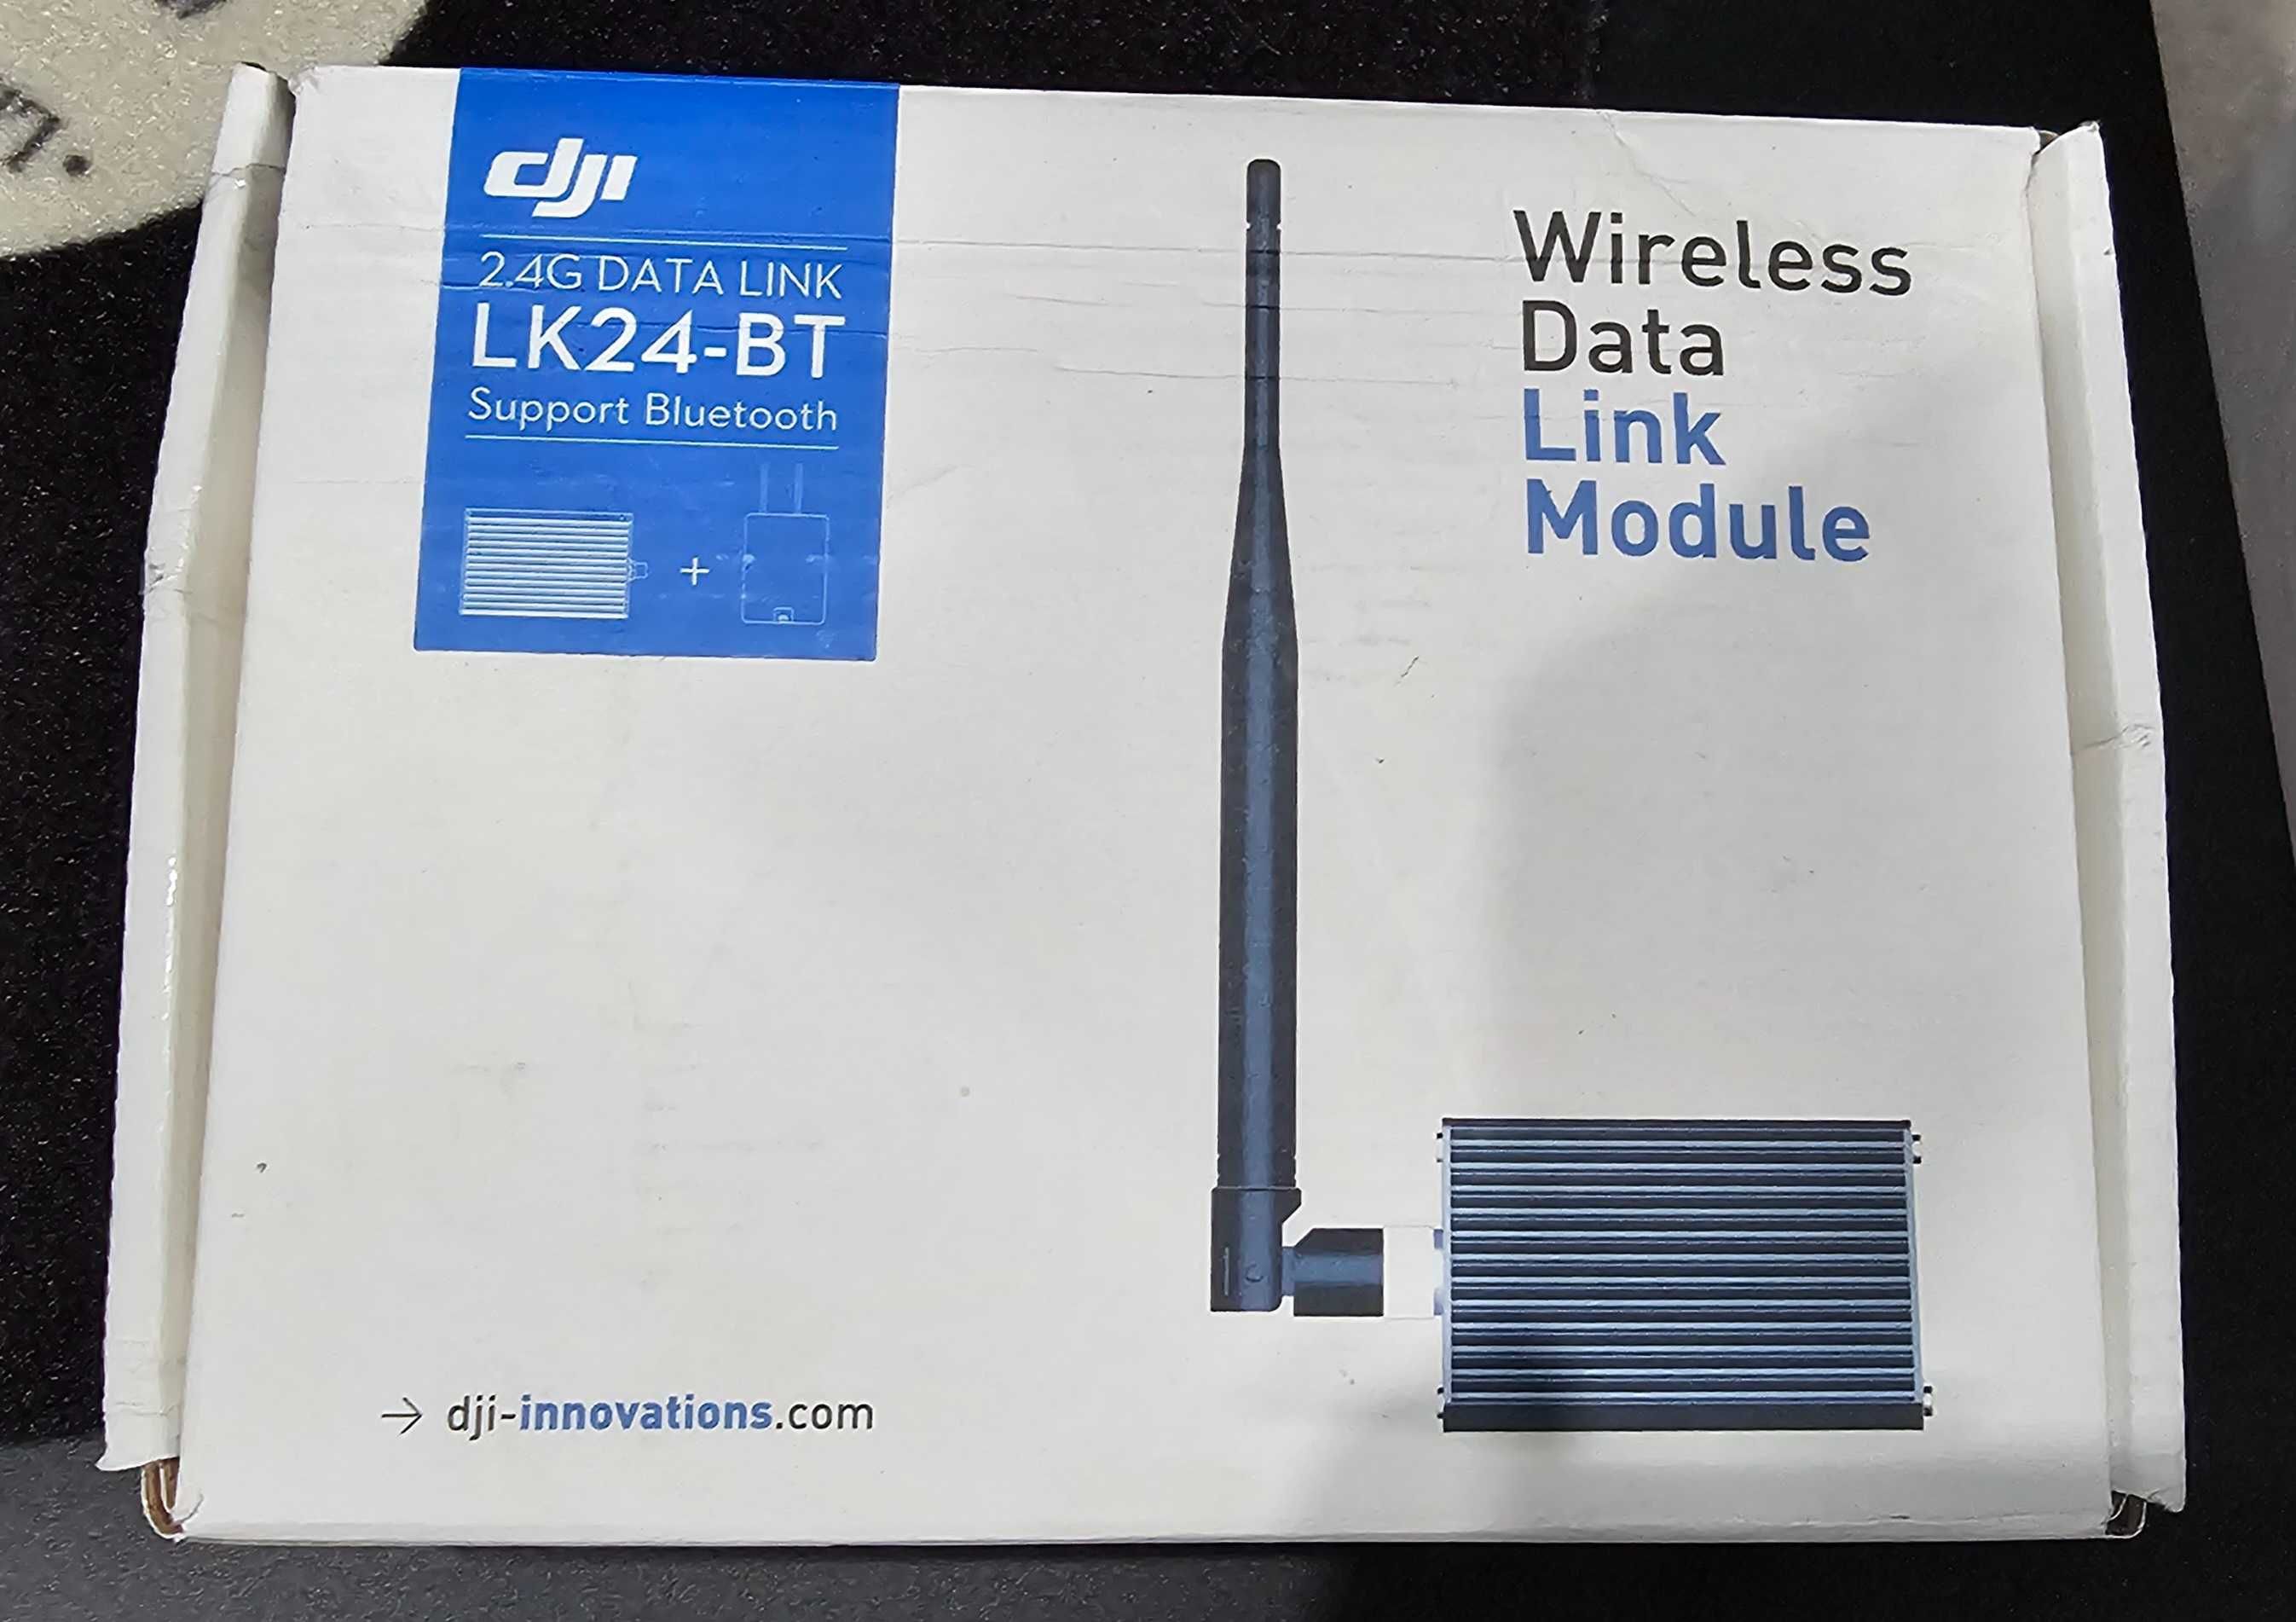 Fabrycznie nowy zestaw DJI LK24-BT 2.4G DATA LINK